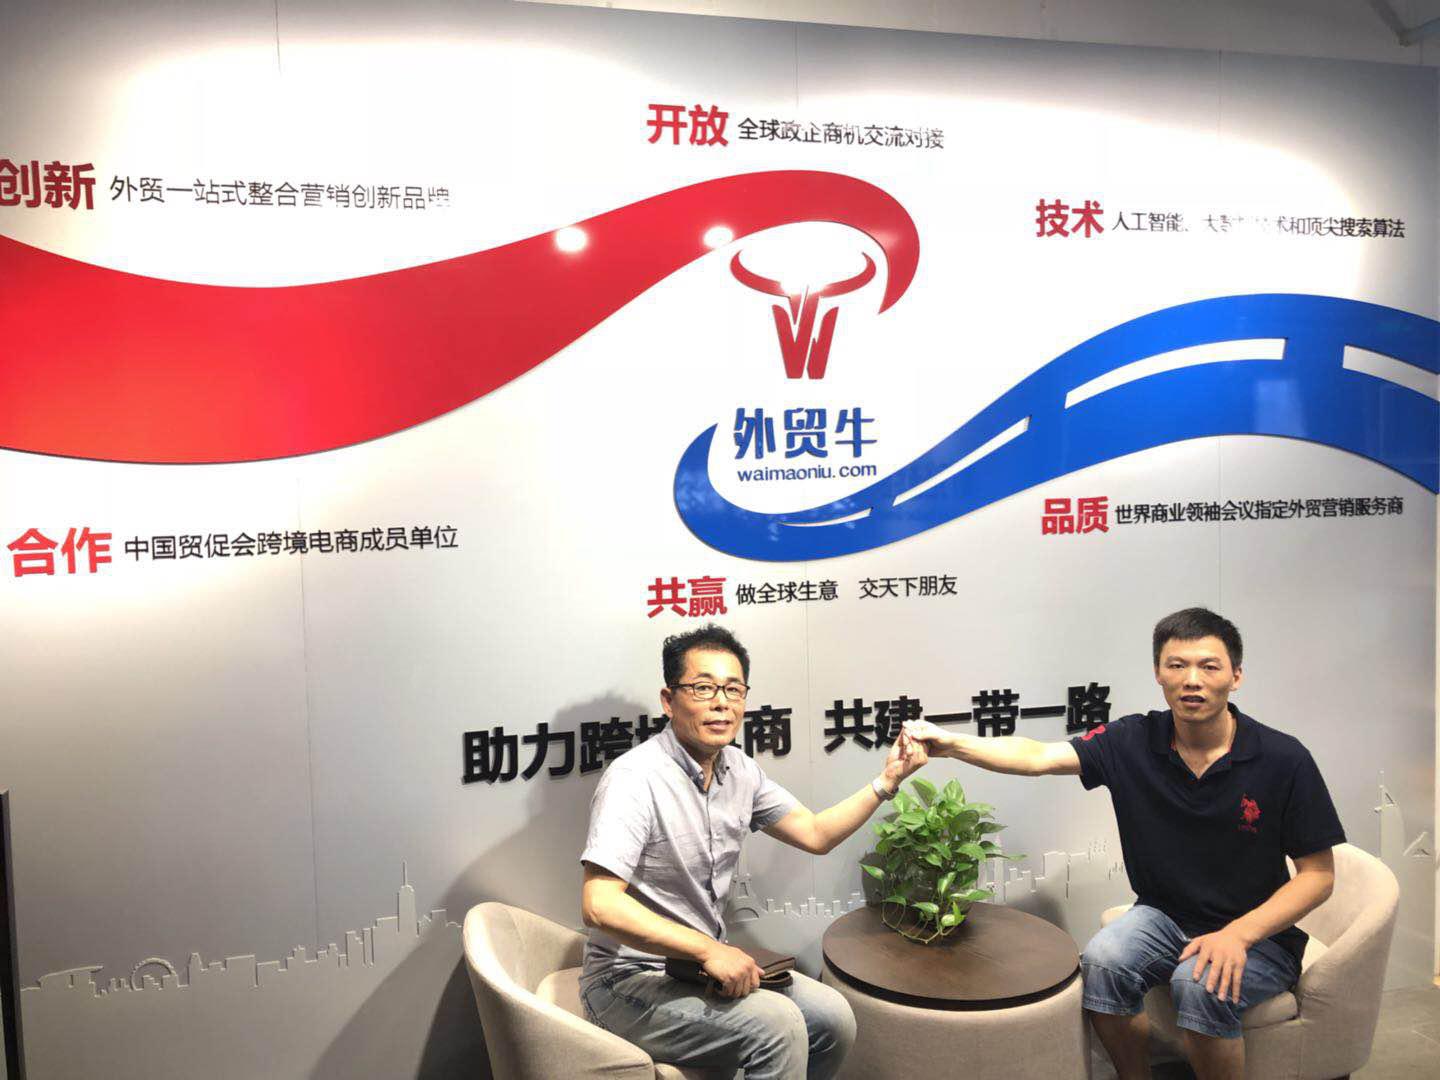 外贸牛战略携手韩国FOEX贸易馆,开创新型国际